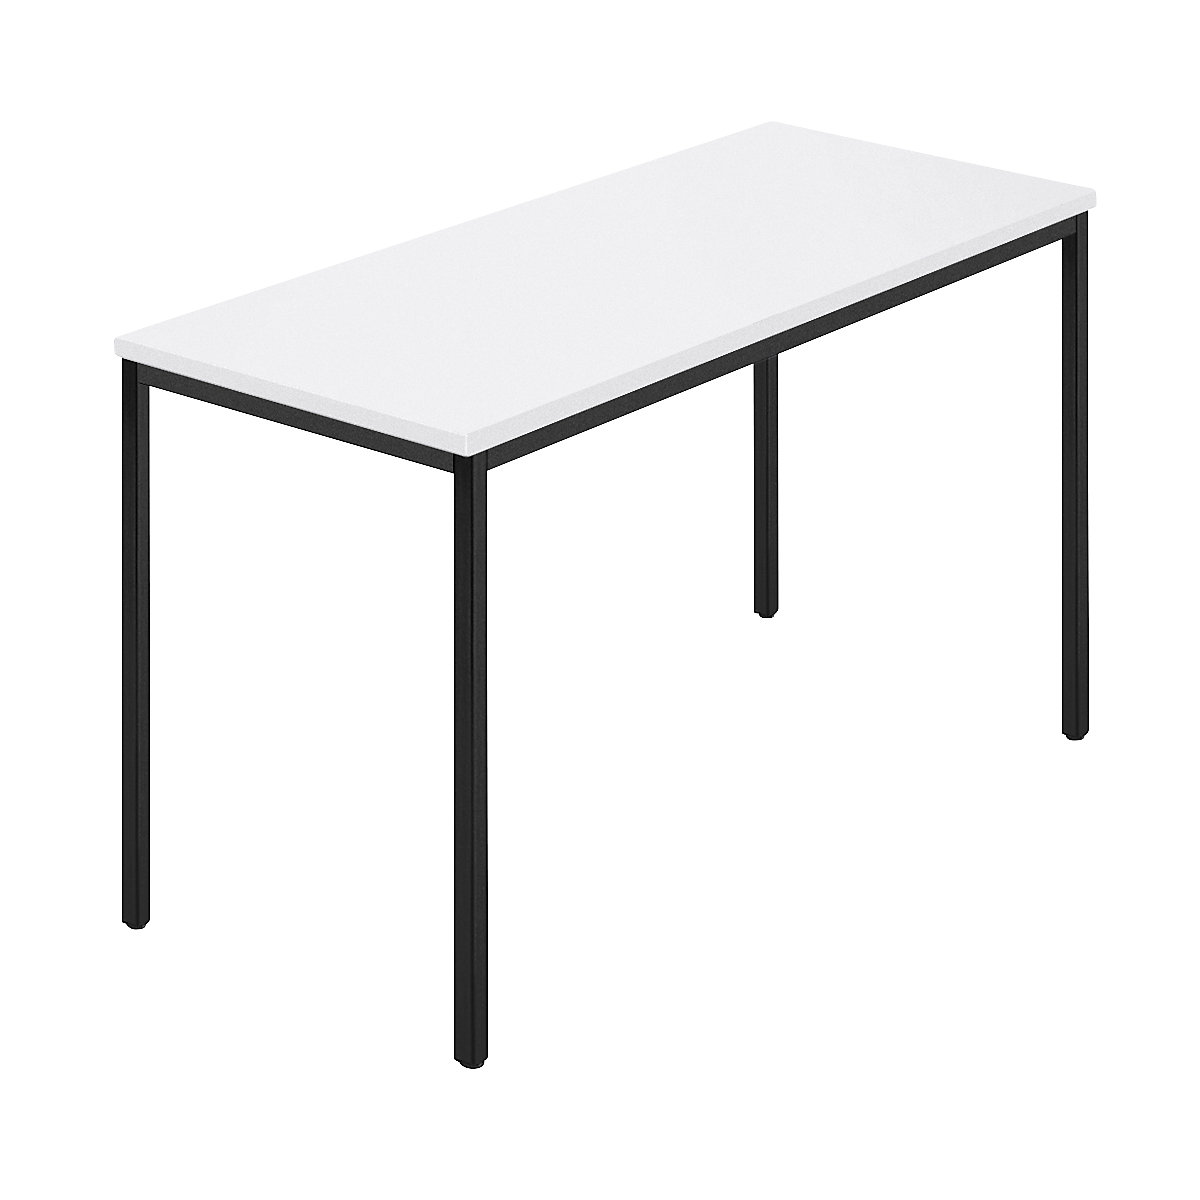 Pravokutni stol, presvučena četverokutna cijev, ŠxD 1200 x 600 mm, u bijeloj / antracit boji-8